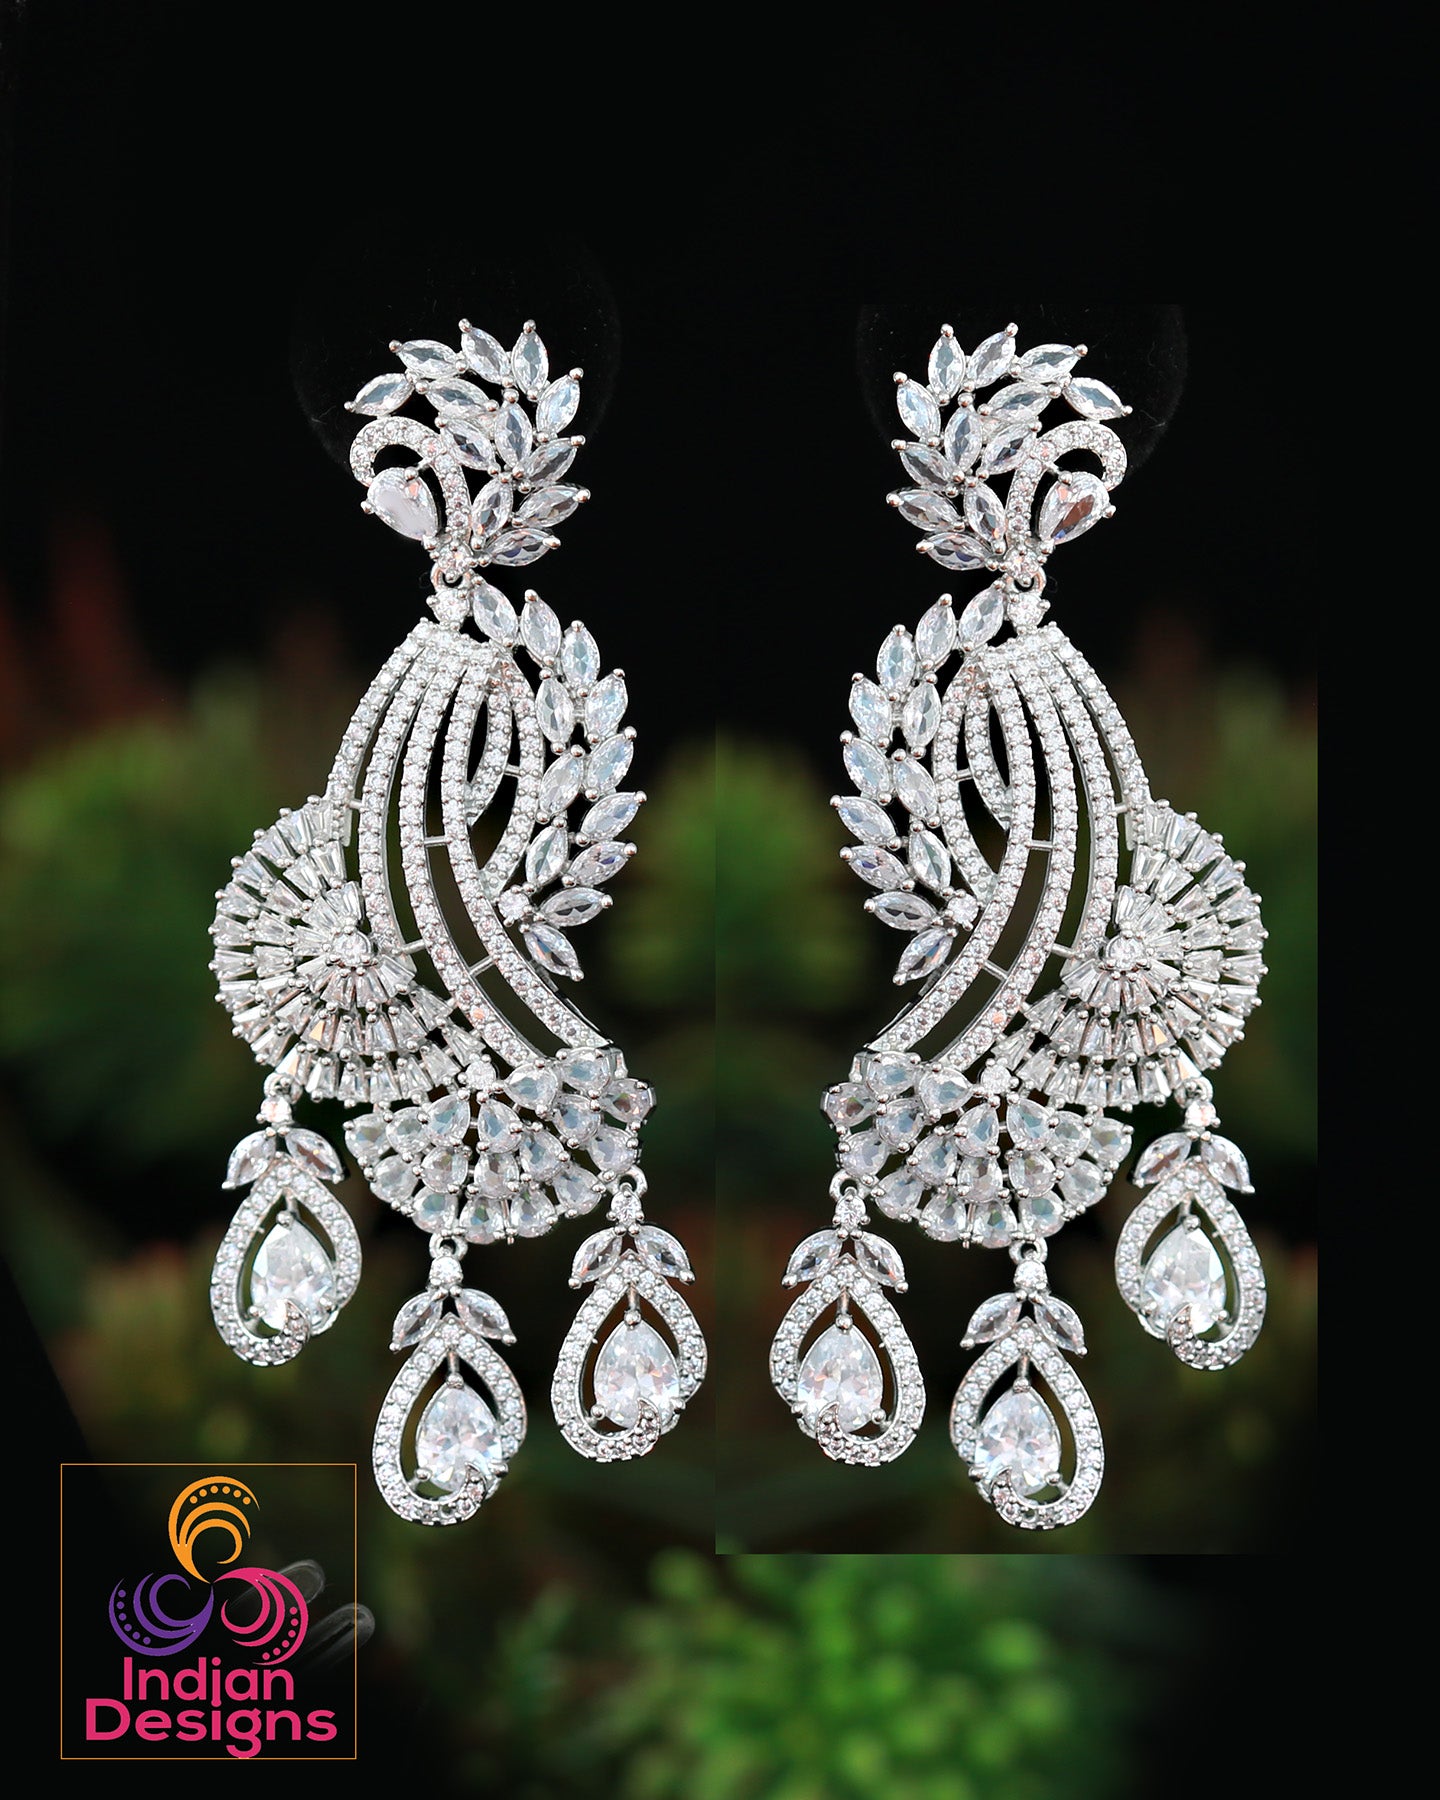 American diamond earrings in silver | CZ Pink Mint Green Diamond Peacock Earrings